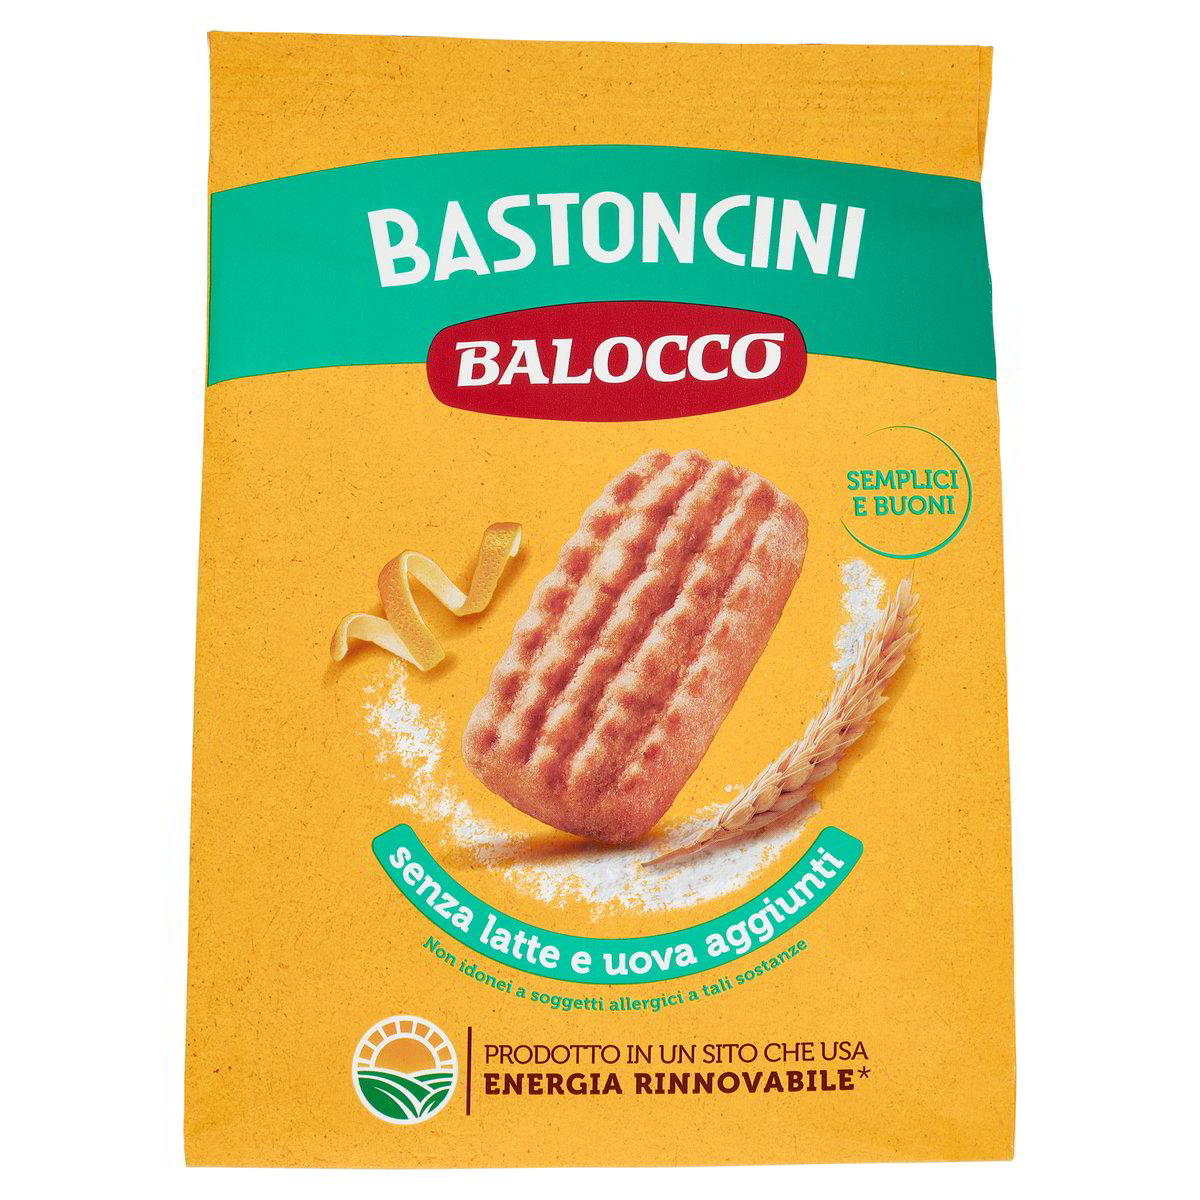 Biscotti Bastoncini